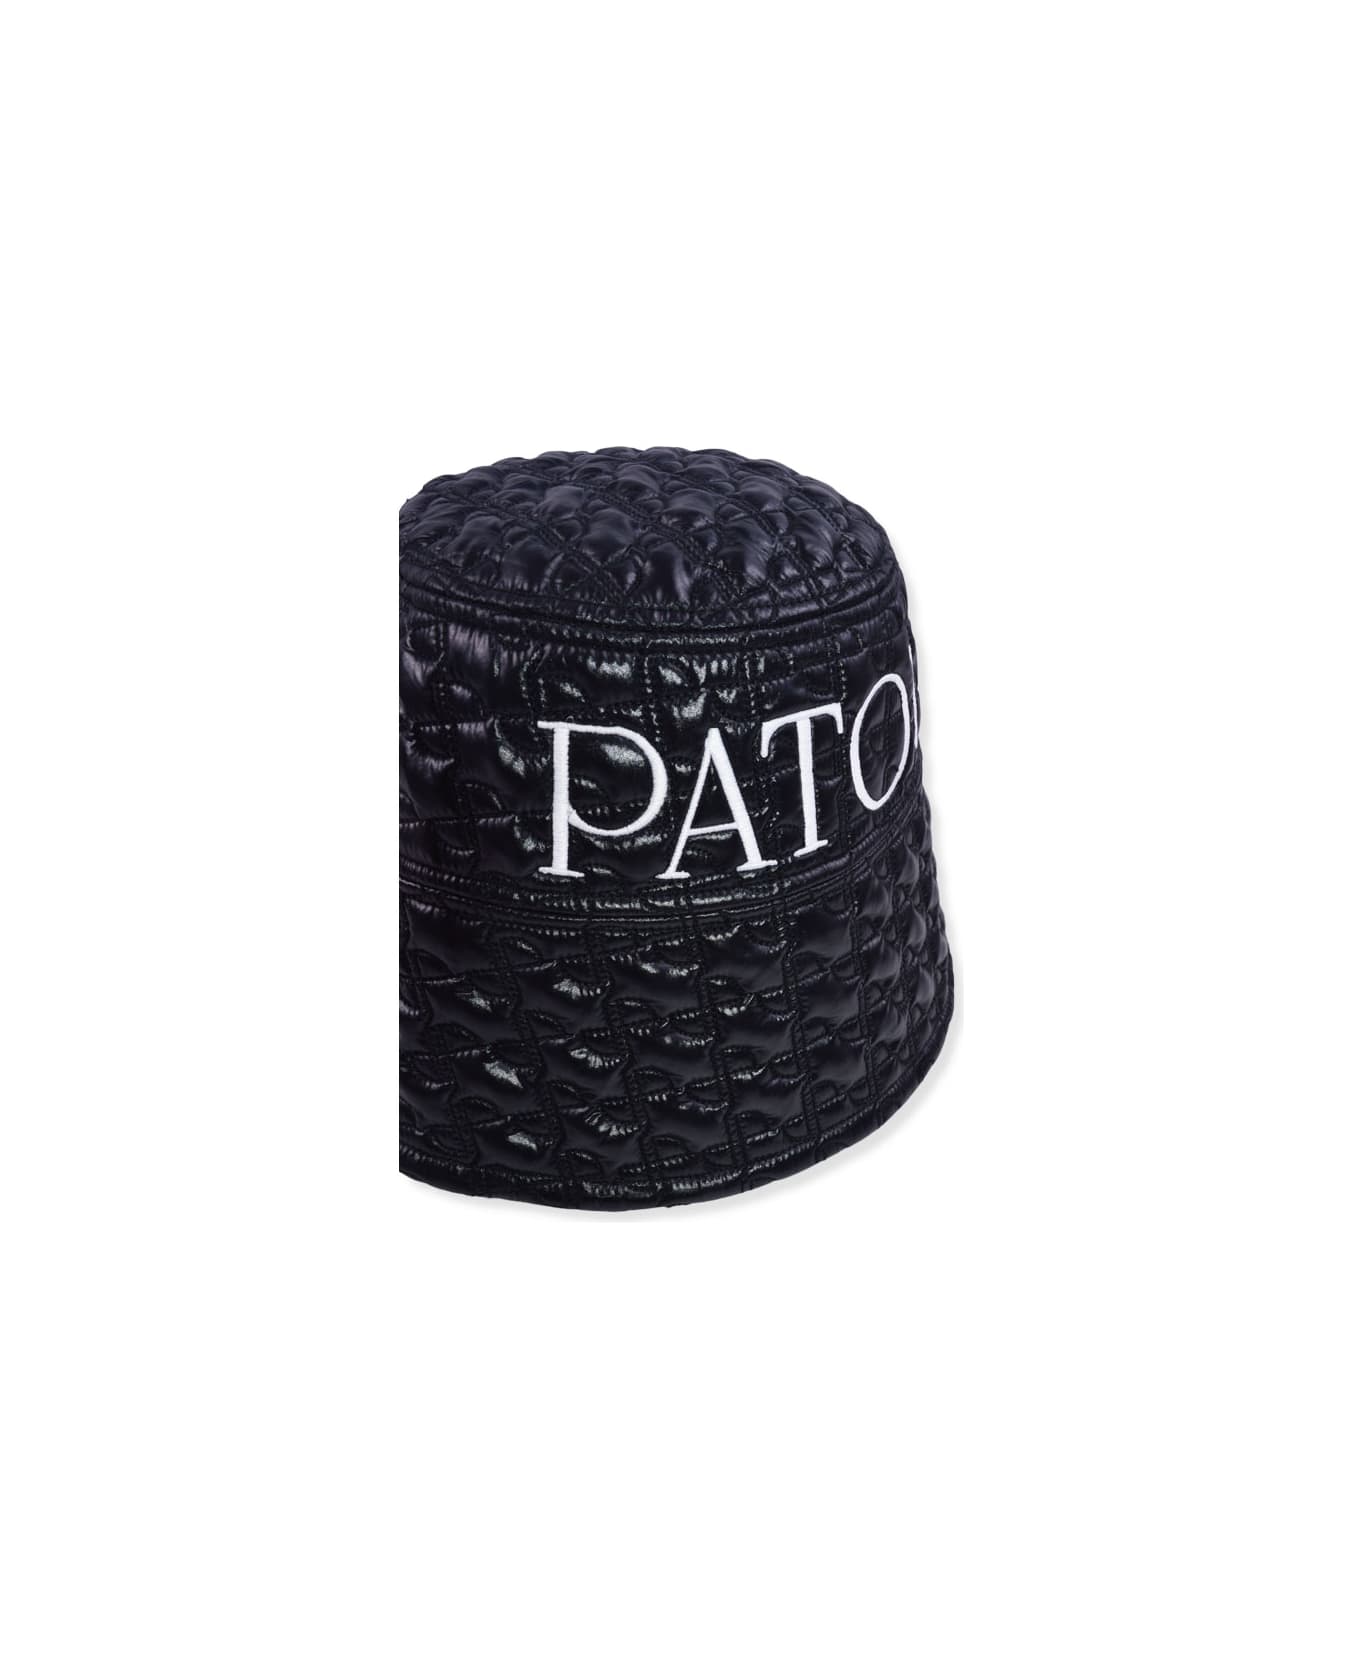 Patou Hat - BLACK